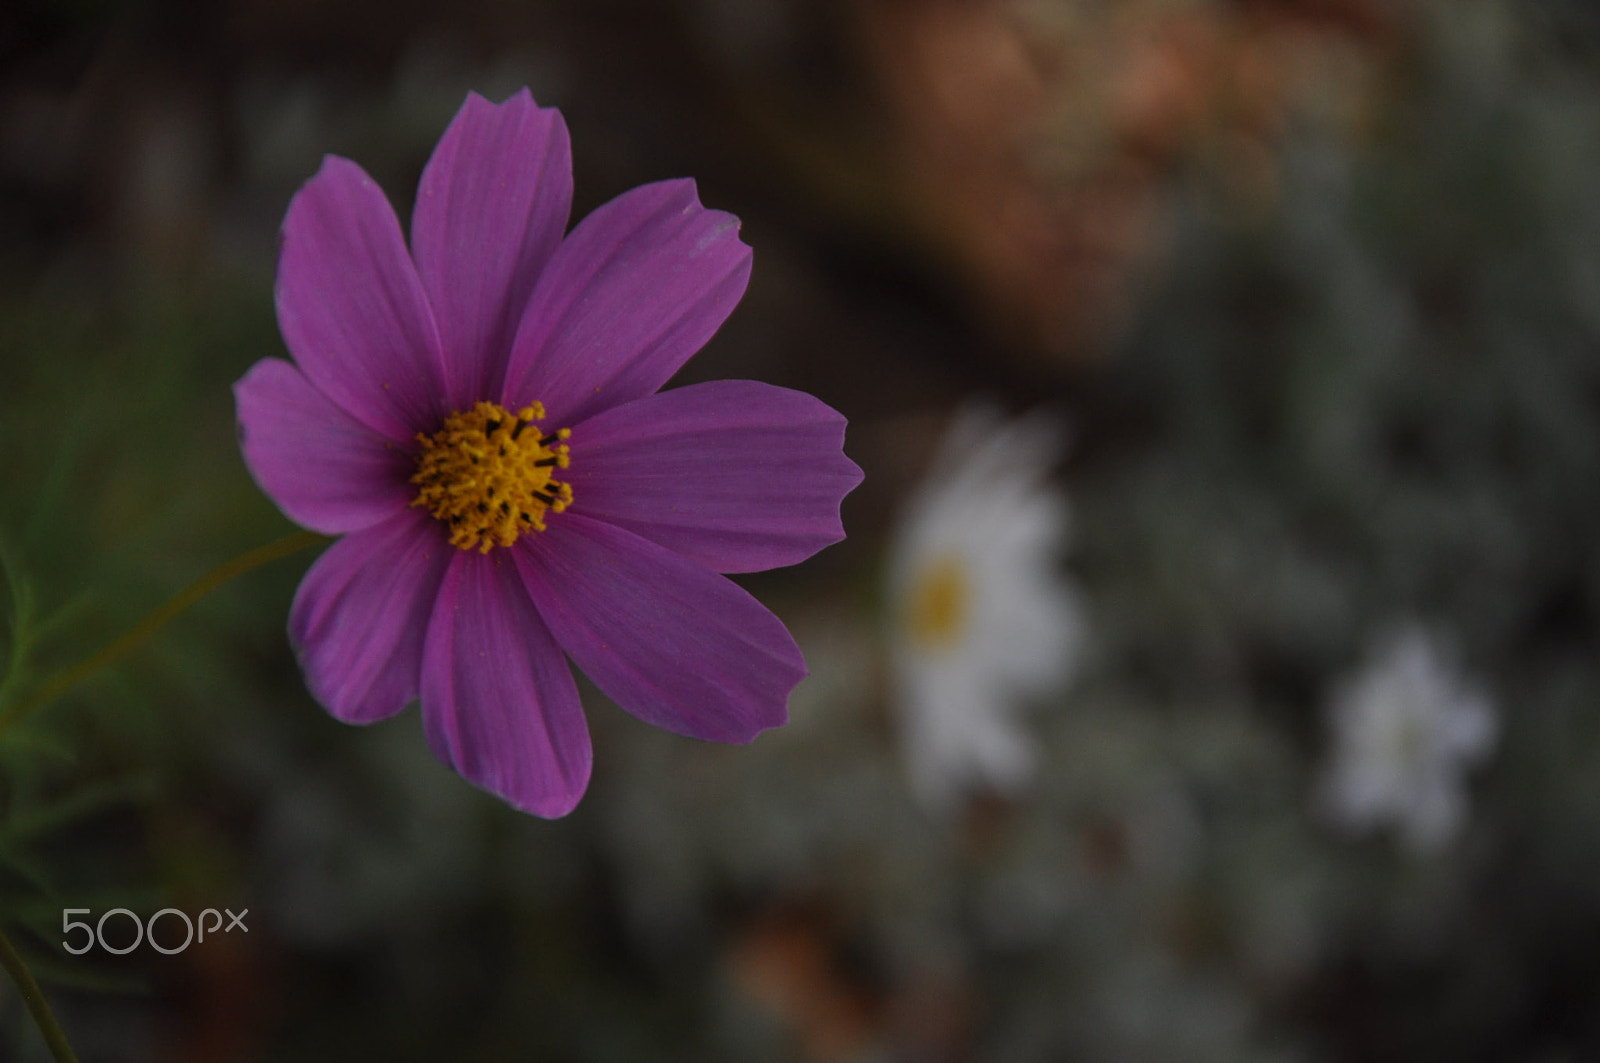 Nikon D90 sample photo. Sonbahar çiçekleri photography